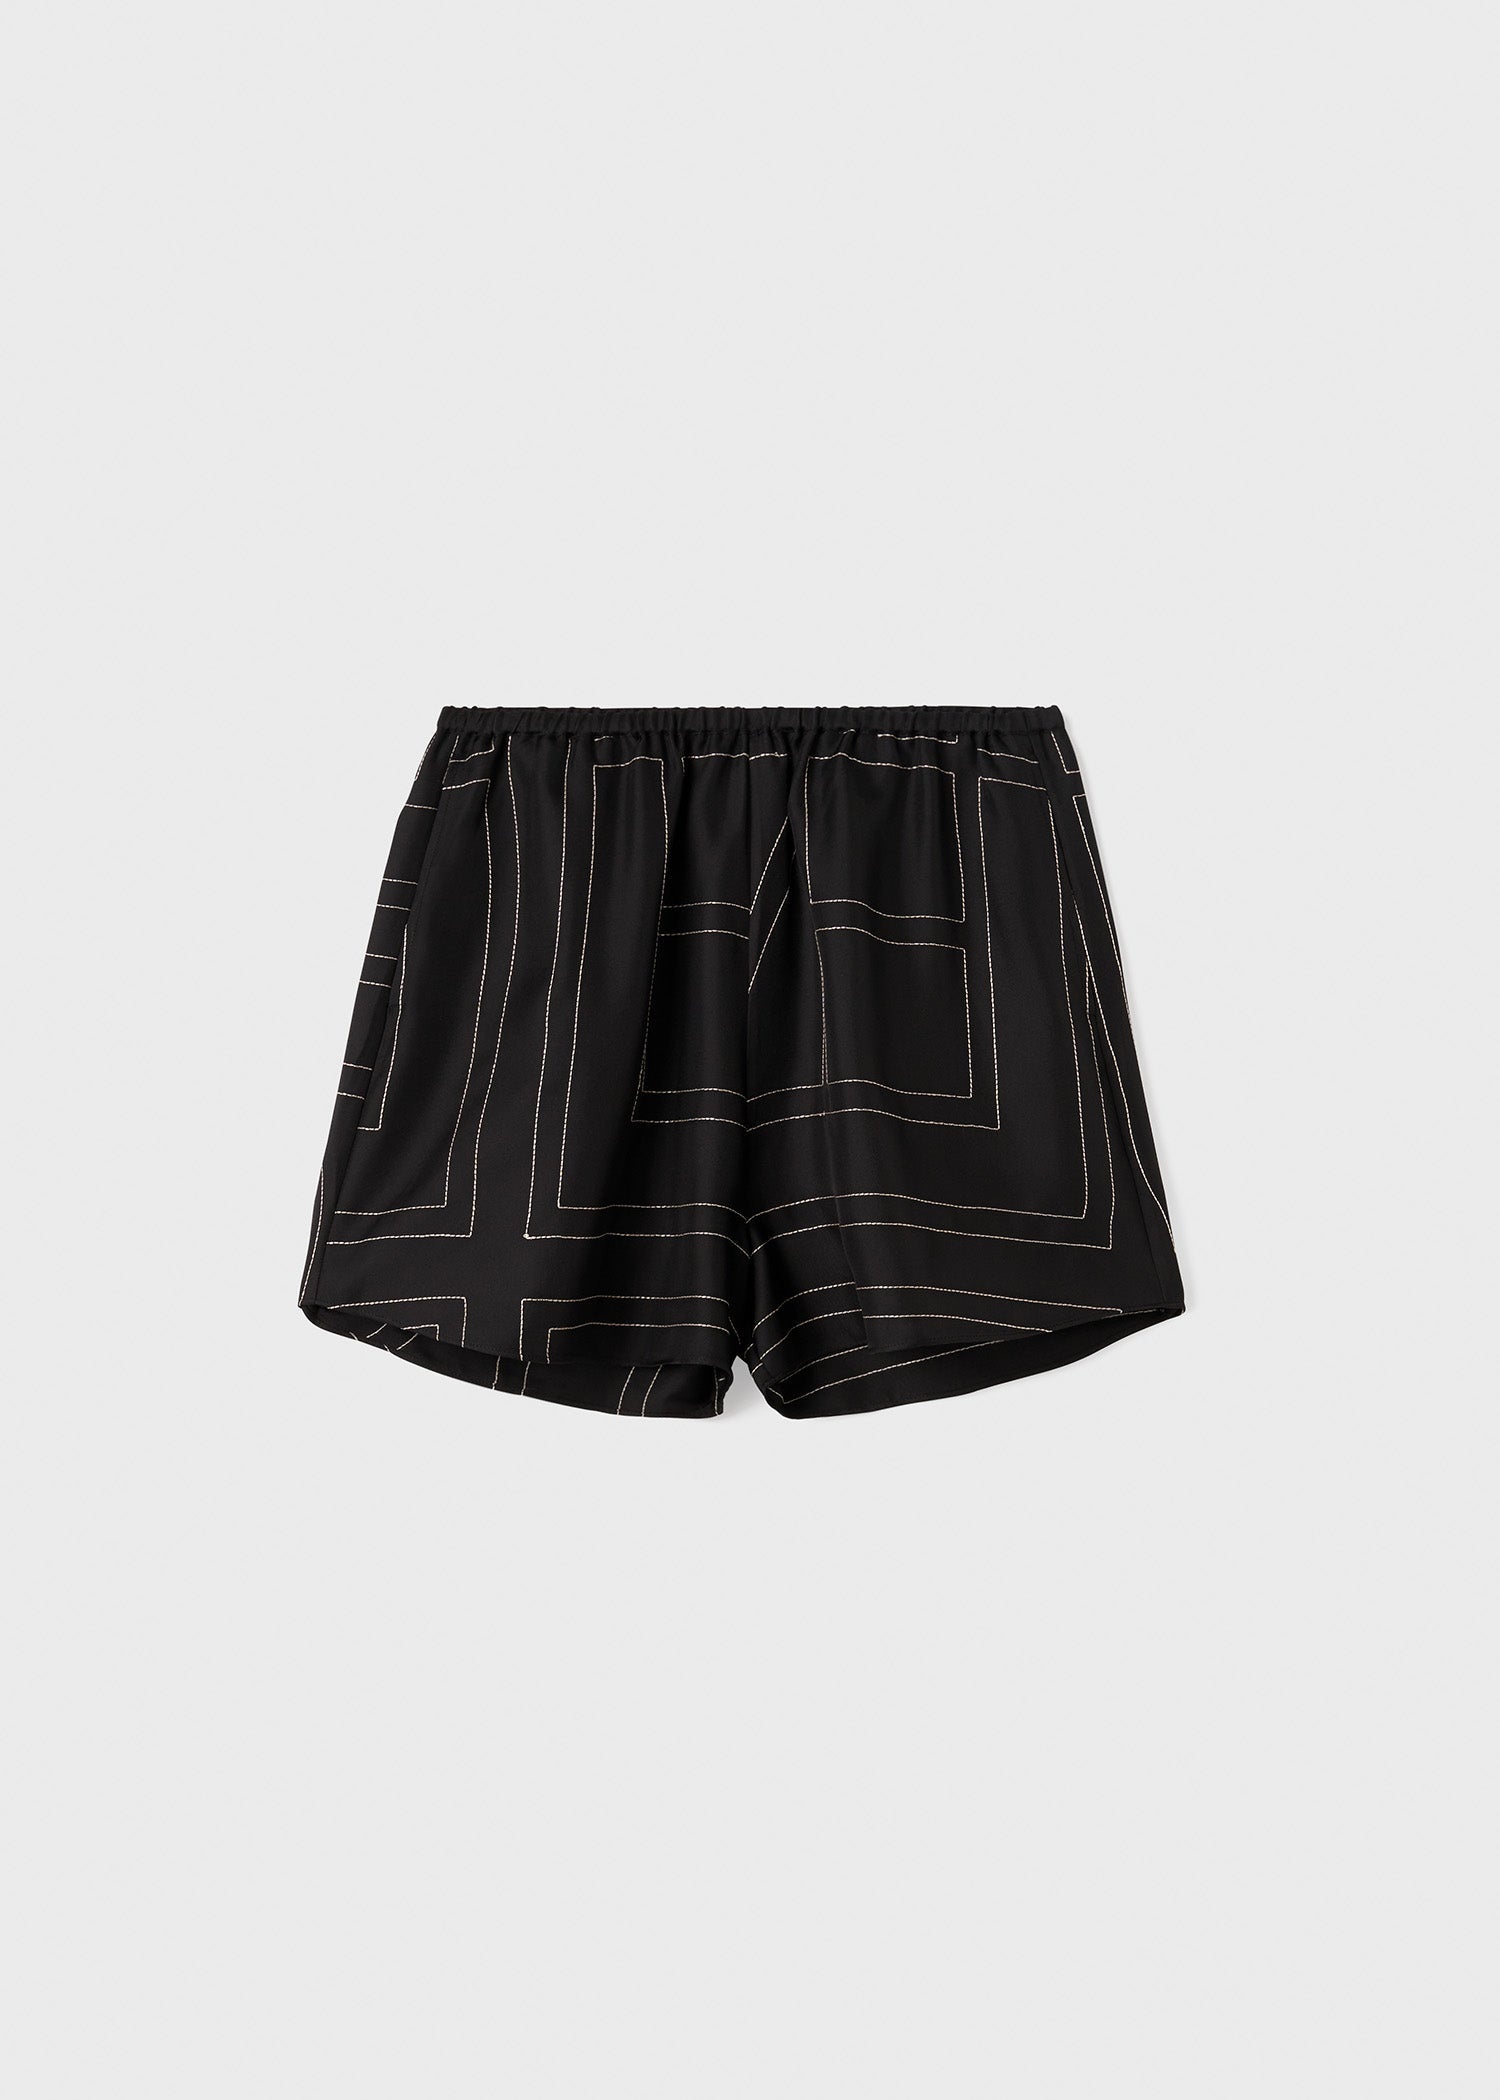 Monogram silk pj shorts black - 1